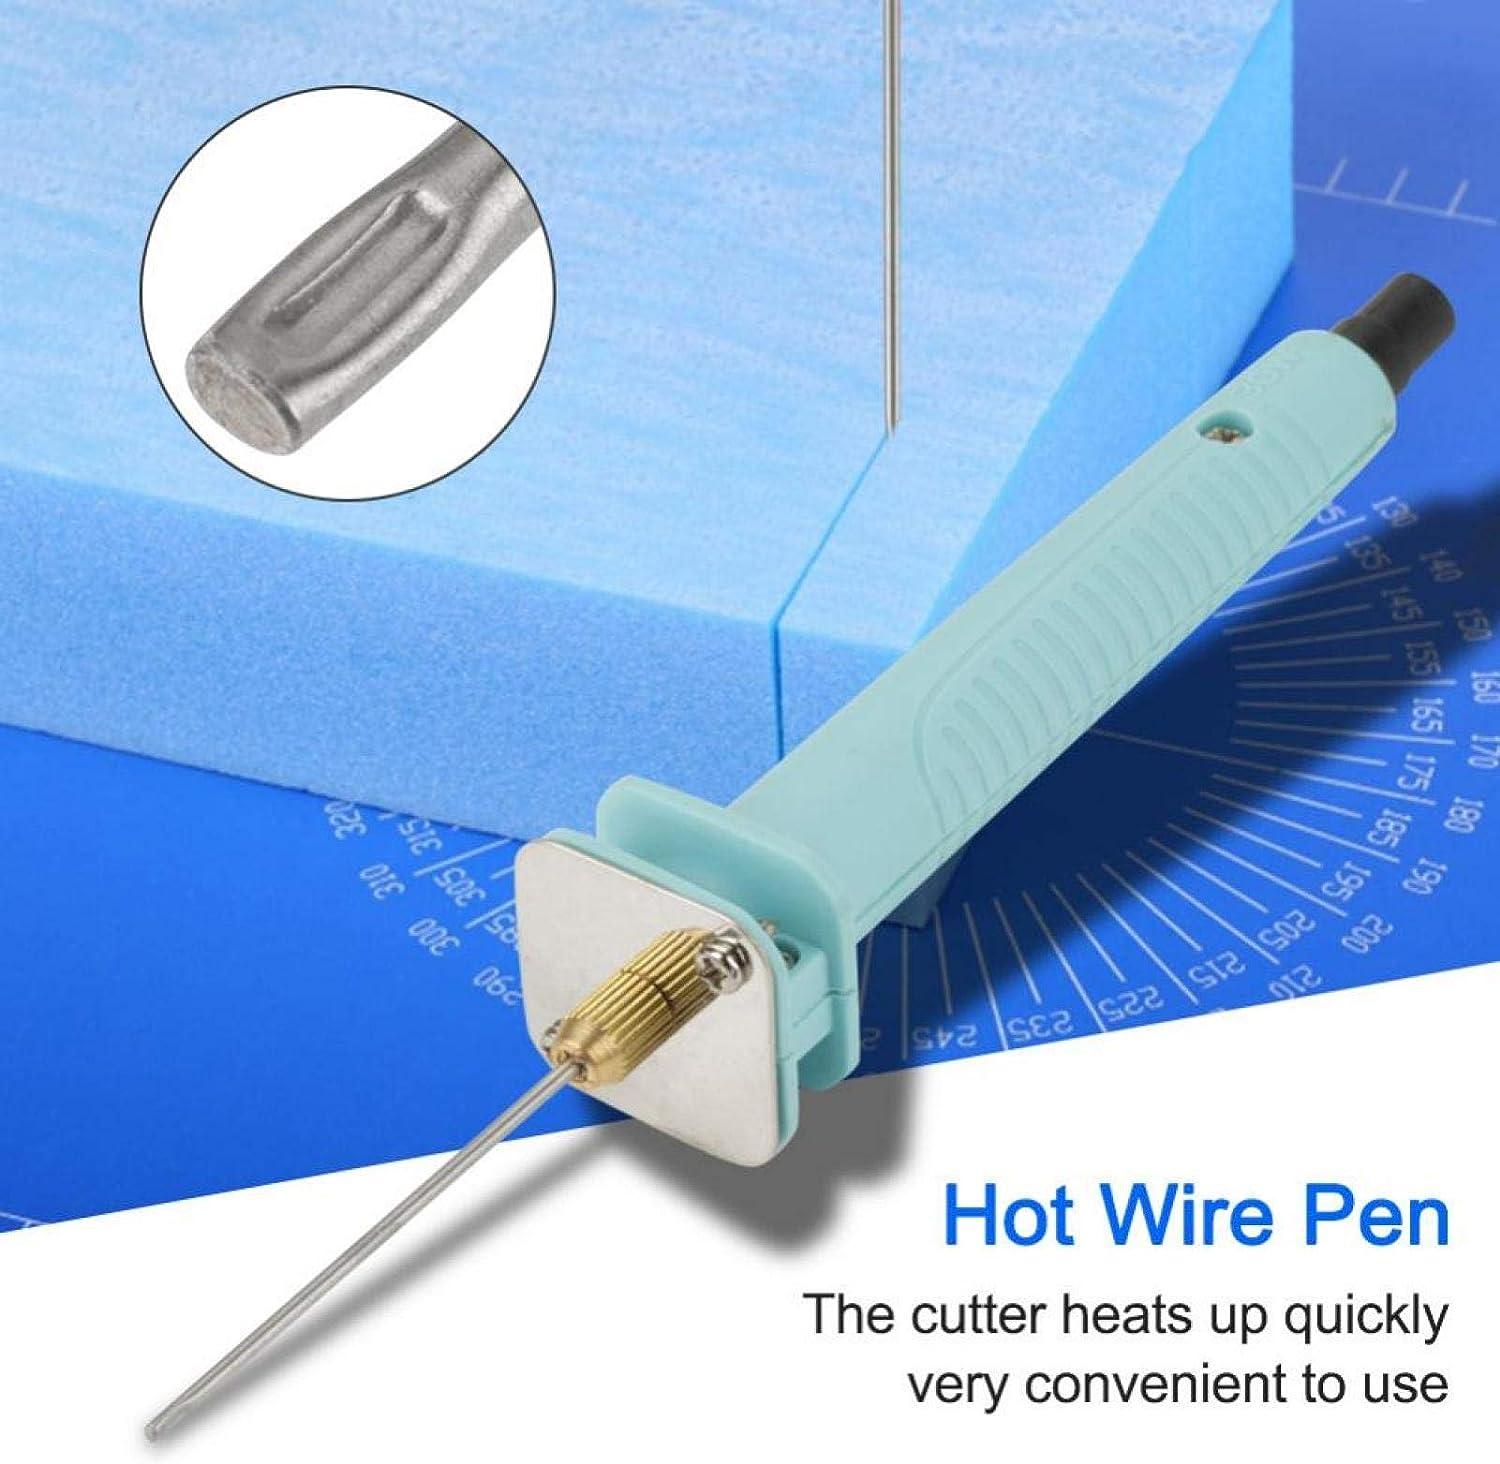 Hot Wire Foam Cutter Heat Up Quick Hot Wire Pen Hot Wire Cutting